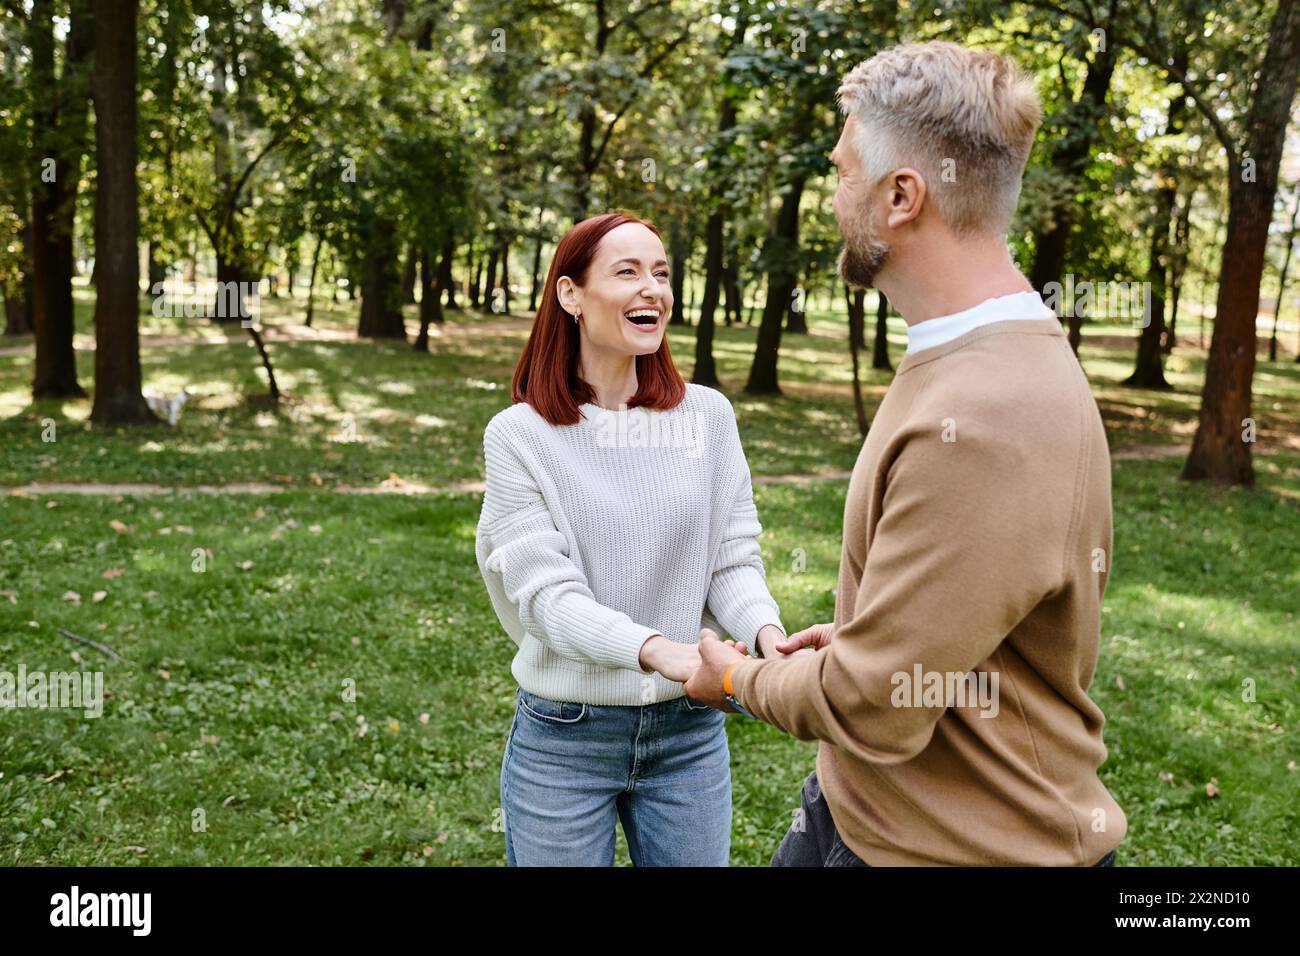 Ein Mann und eine Frau, die bei einem Spaziergang durch den Park Hände halten. Stockfoto